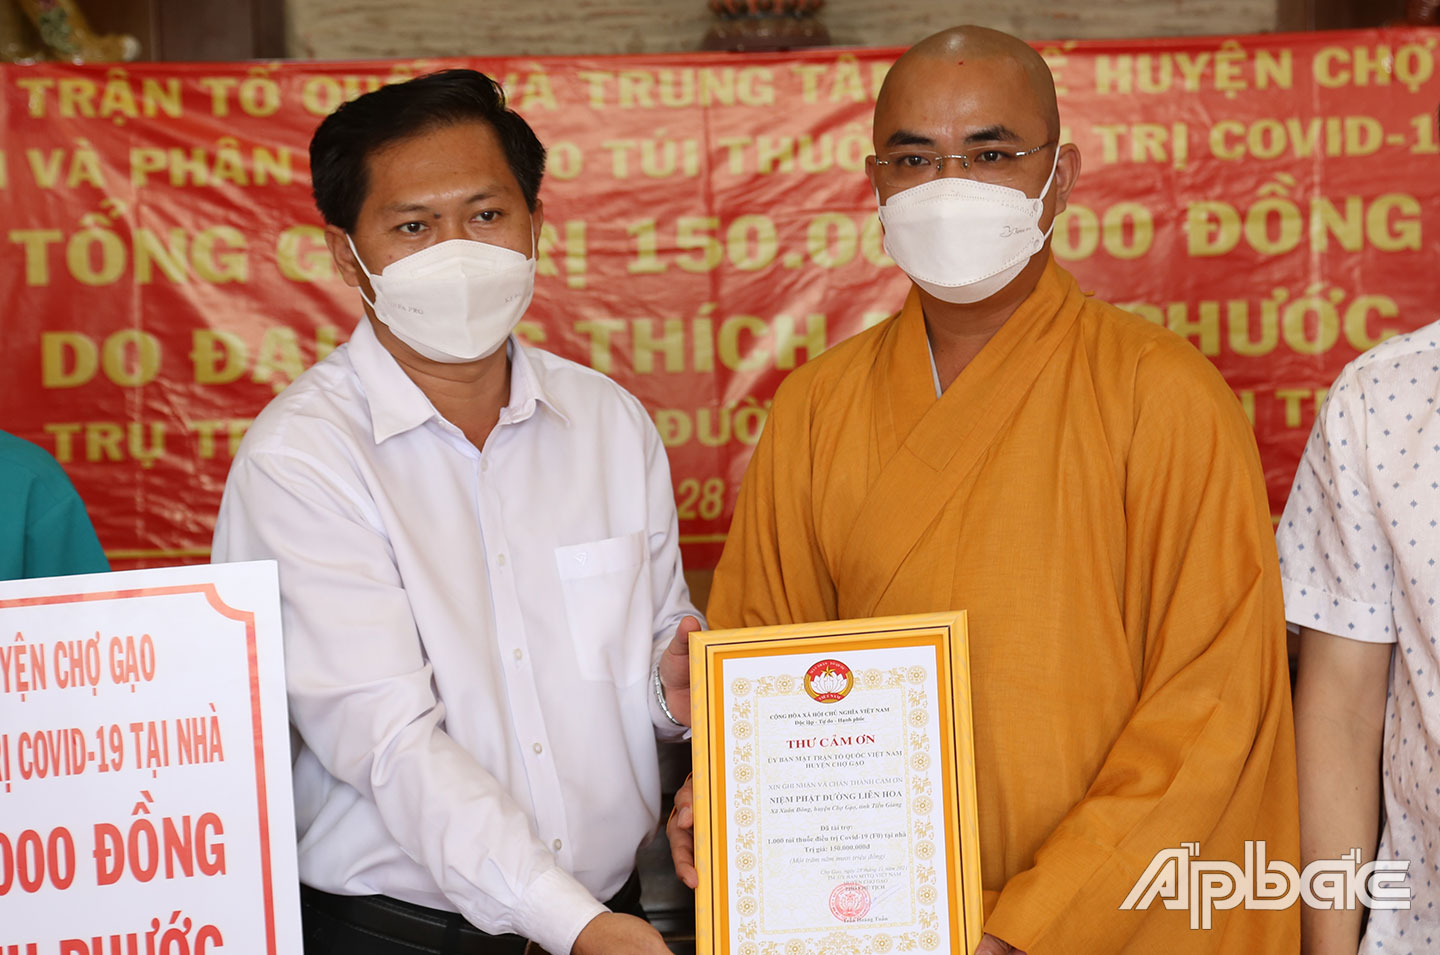 Lãnh đạo UBND huyện Chợ Gạo trao thư cảm ơn cho Niệm Phật đường Liên hoa.